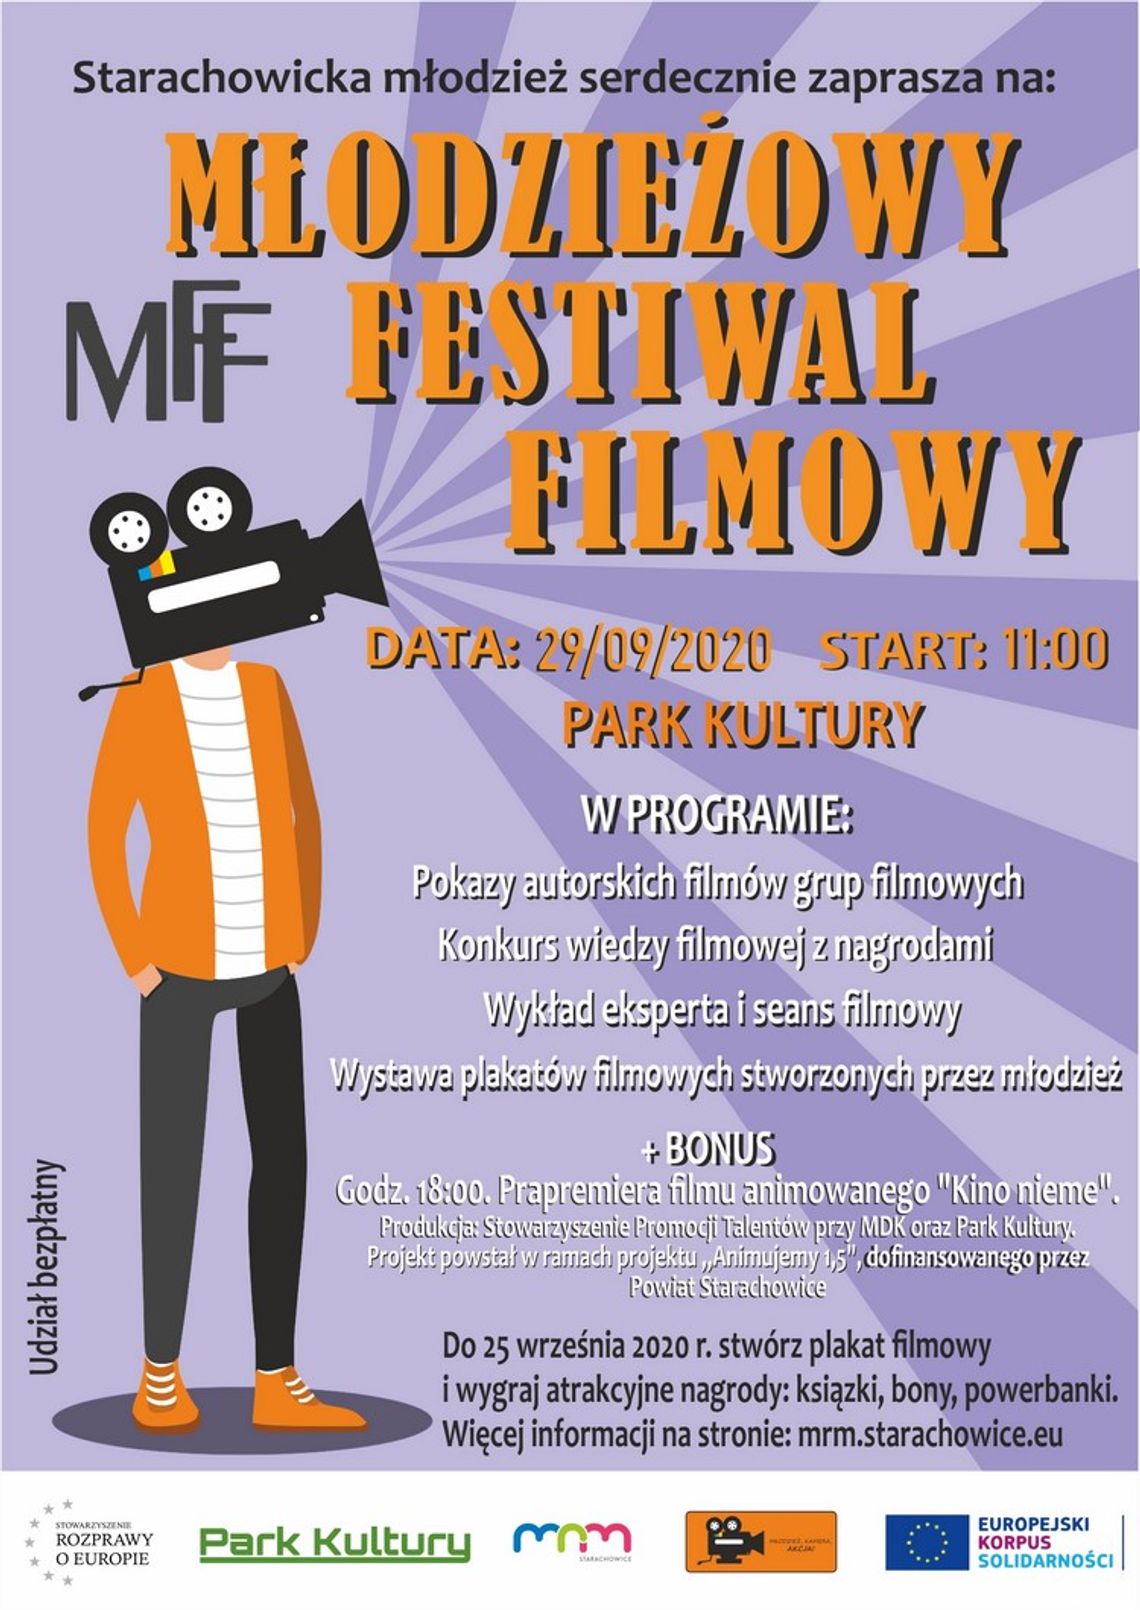 Młodzieżowy Festiwal Filmowy w Parku Kultury w Starachowicach!